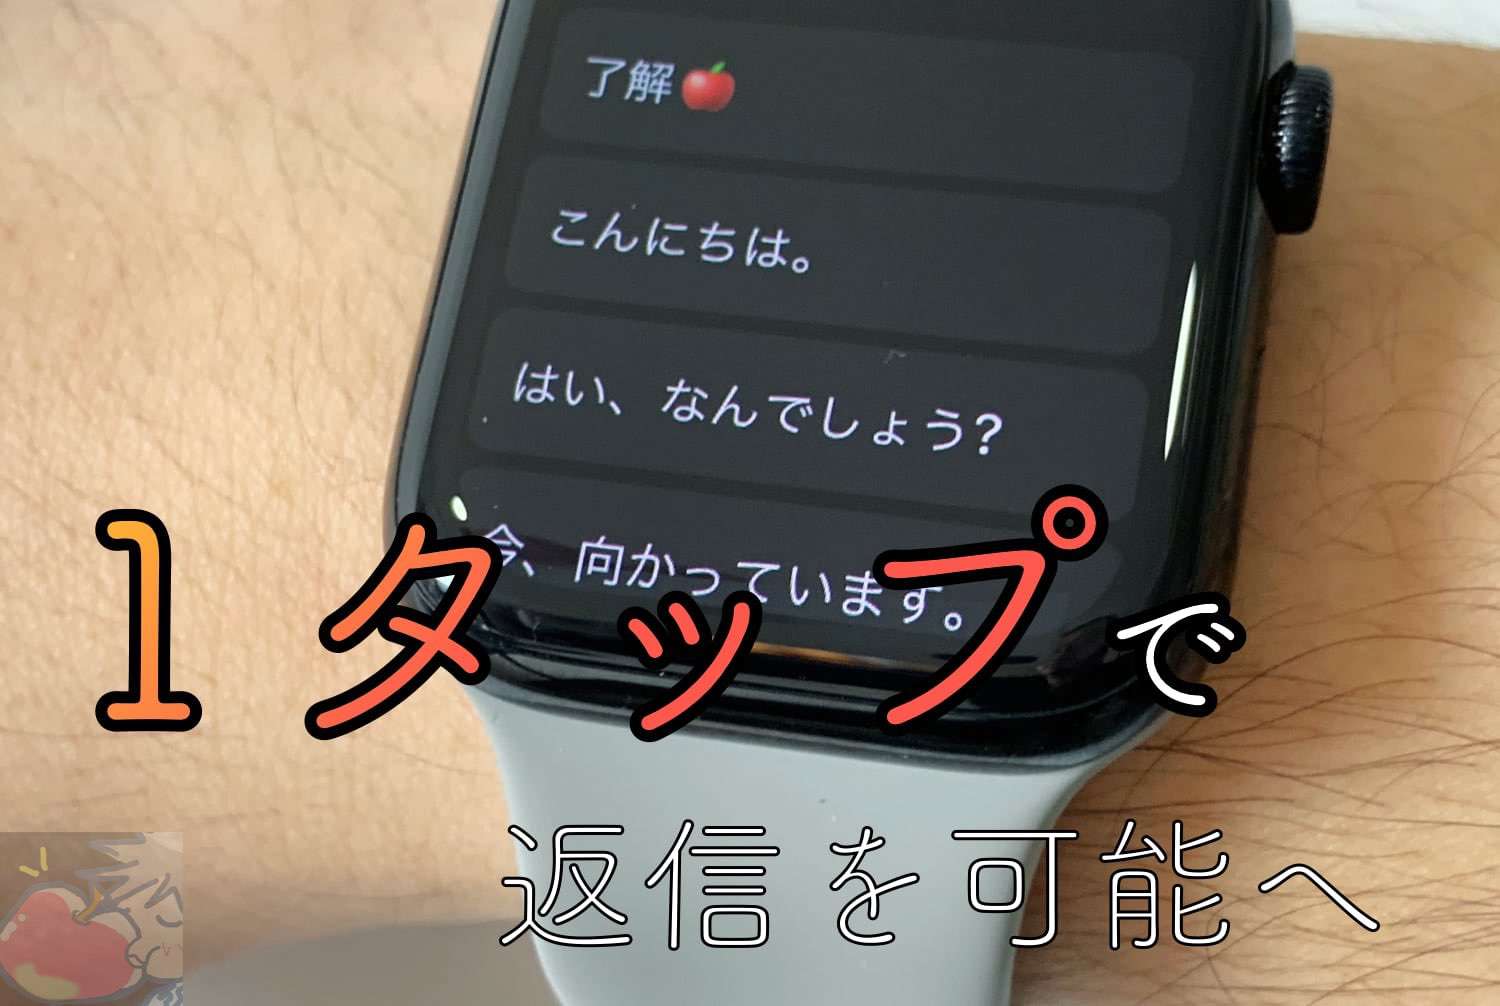 Apple Watchから１タップで返信する定形文の設定方法【純正メッセージ, LINE】